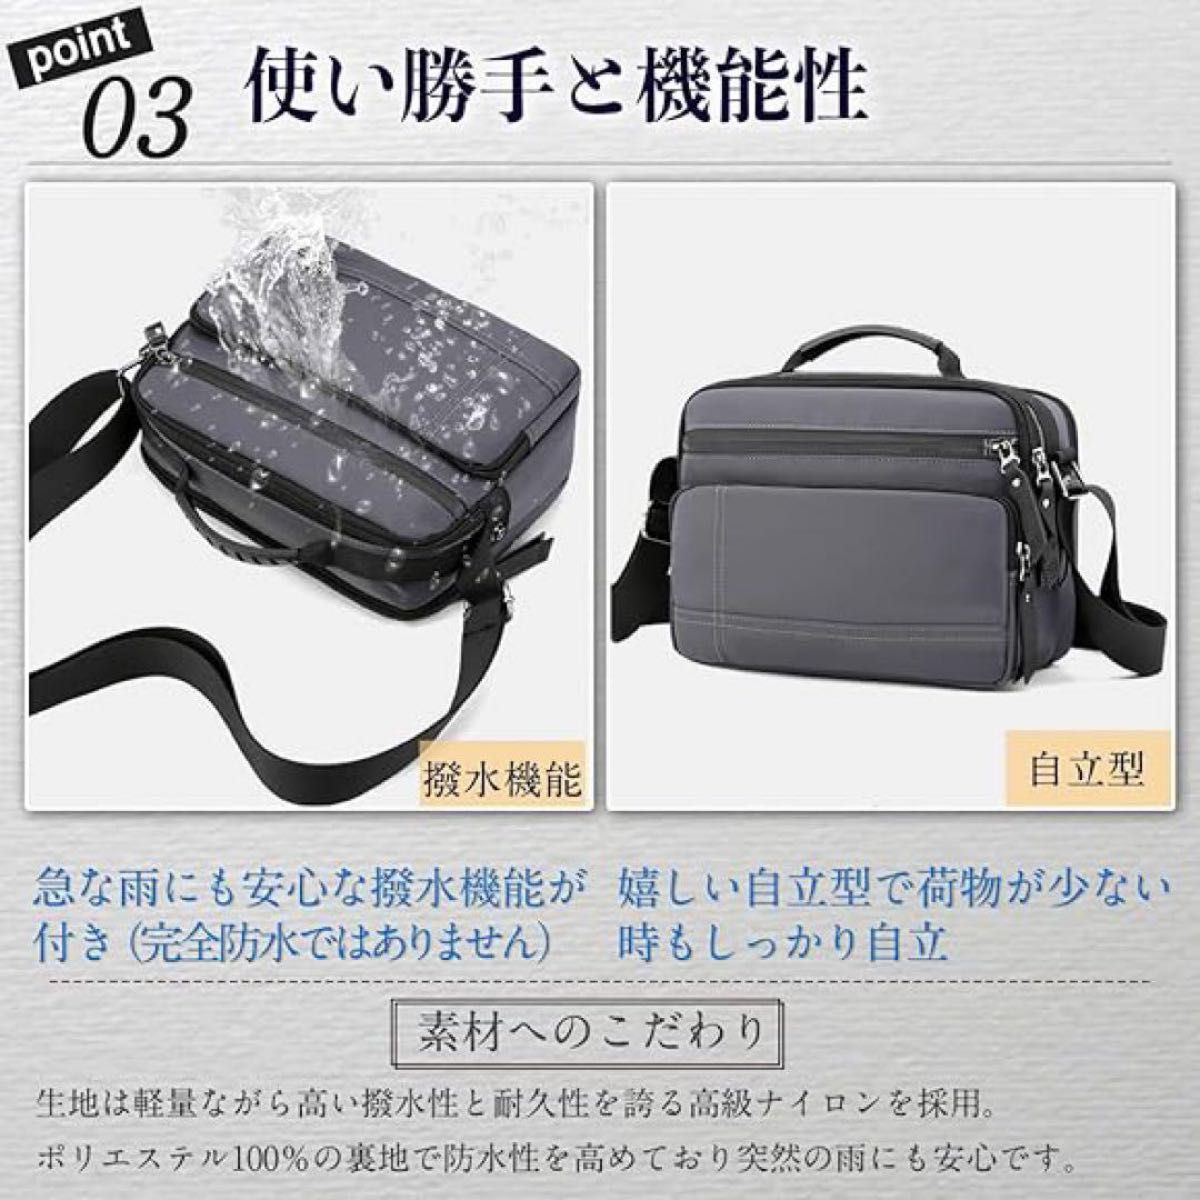 多機能バッグ ネイビー 日本企画 ショルダー 肩掛け ショルダーバッグ 通勤 通学  普段使い デート お出かけに ボディバッグ 